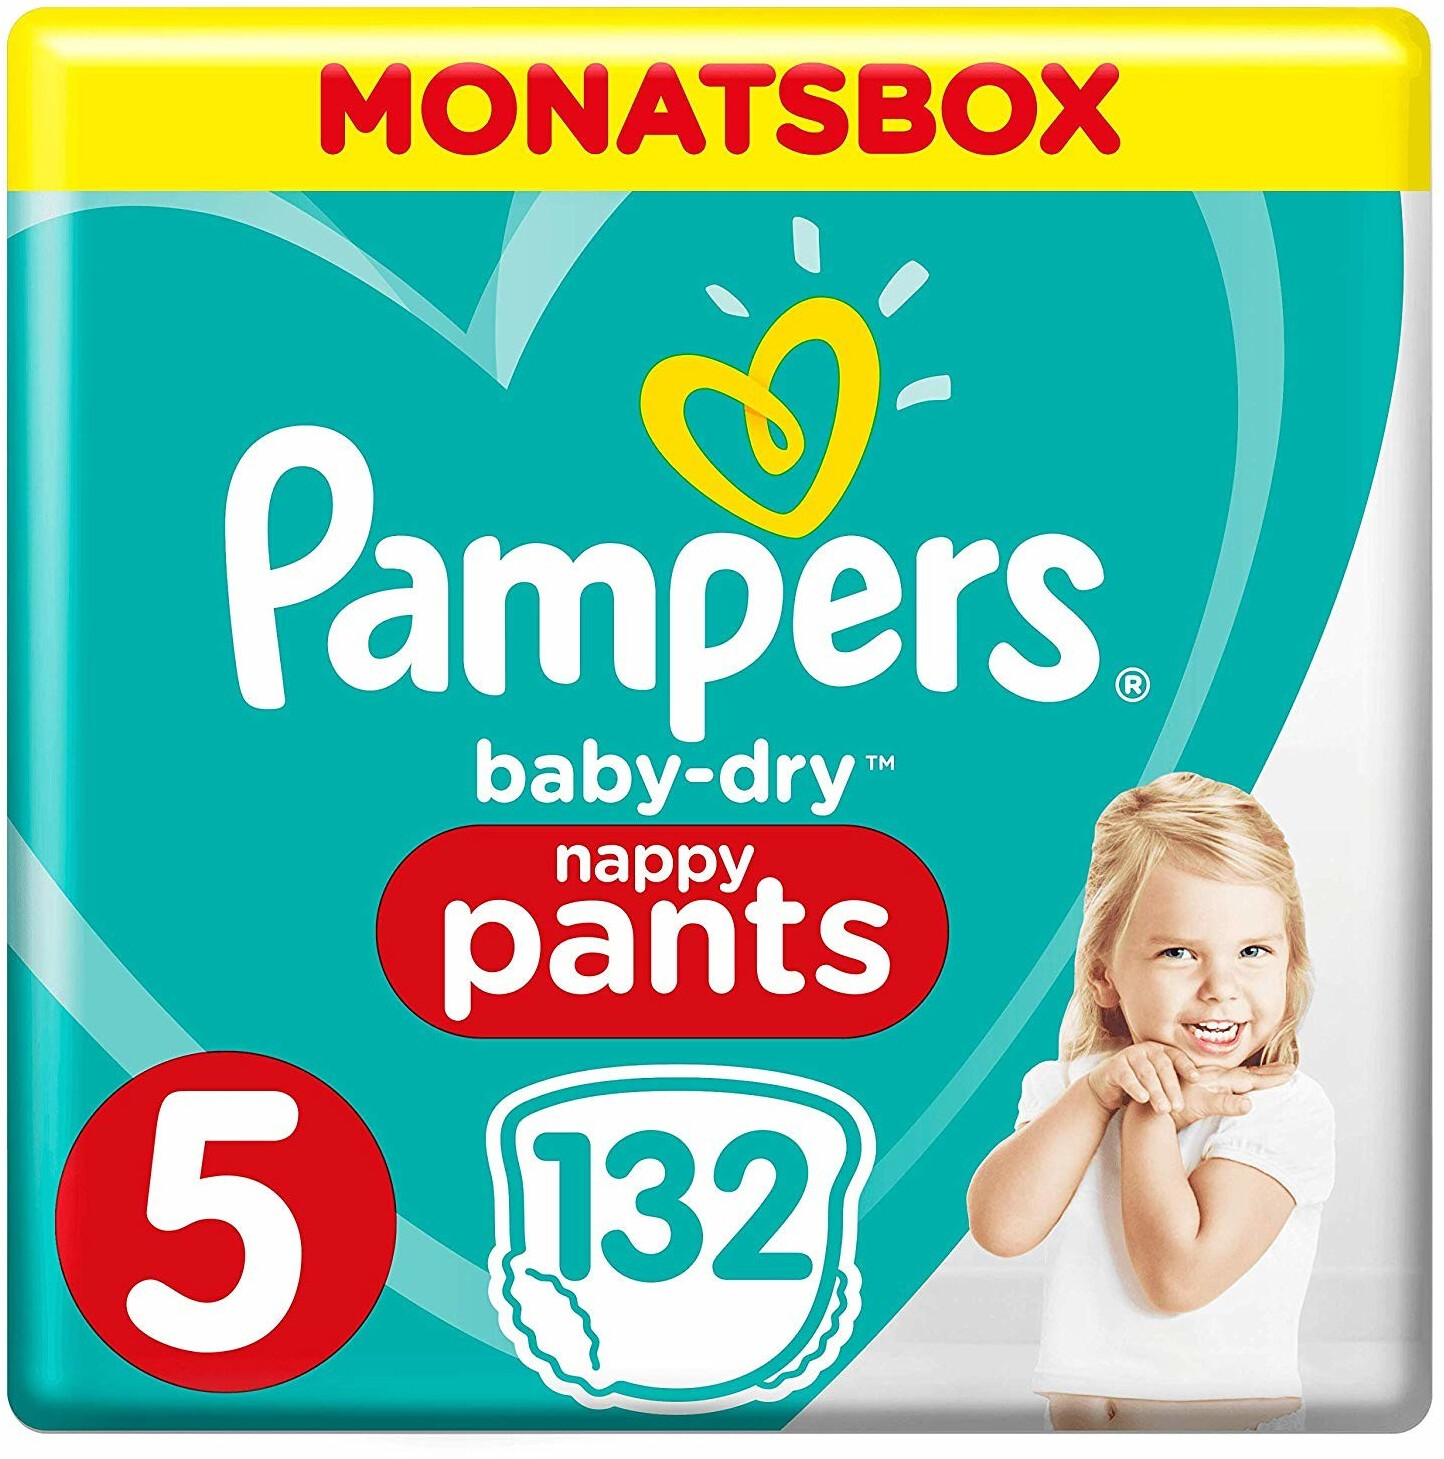 Acheter Baby Dry Pants - Couches - Taille 5 - 12 à 17kg - SPAR Supermarché  Bayonne